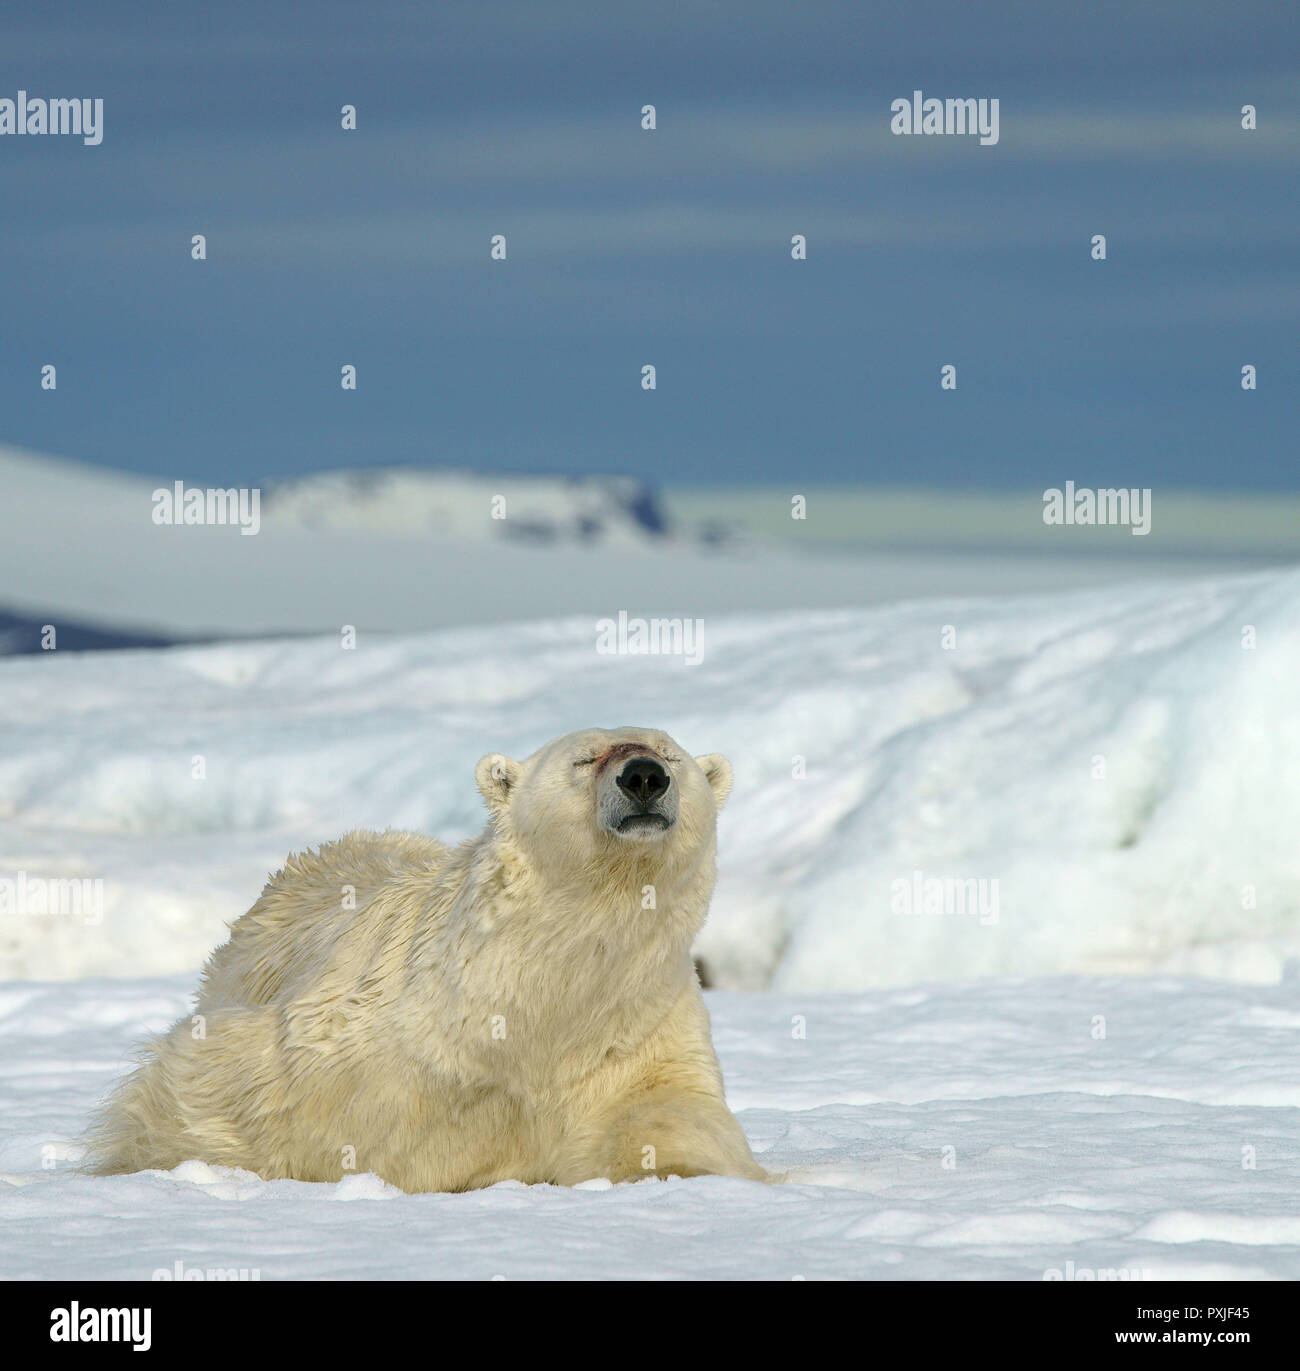 Eisbär (Ursus maritimus) liegt angenehm in den Schnee, in der norwegischen Arktis Svalbard, Norwegen Stockfoto